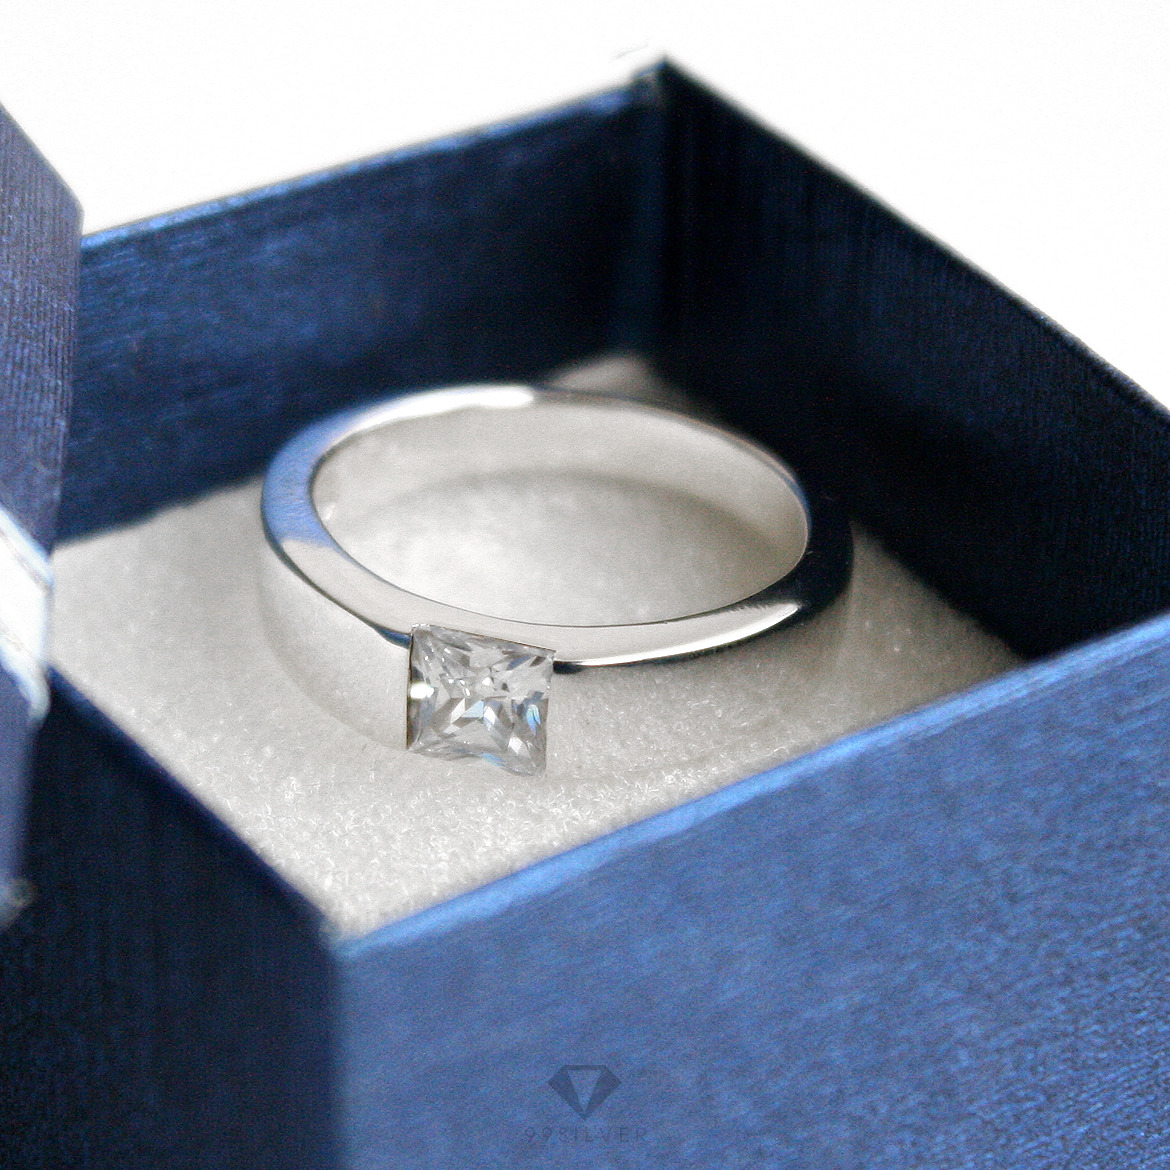  แหวนคู่รัก เพชรเม็ดเหลี่ยม Diamond Cut และเพชรชู 5 มิลลิเมตรประดับด้วยเพชรเม็ดเล็กรอบ